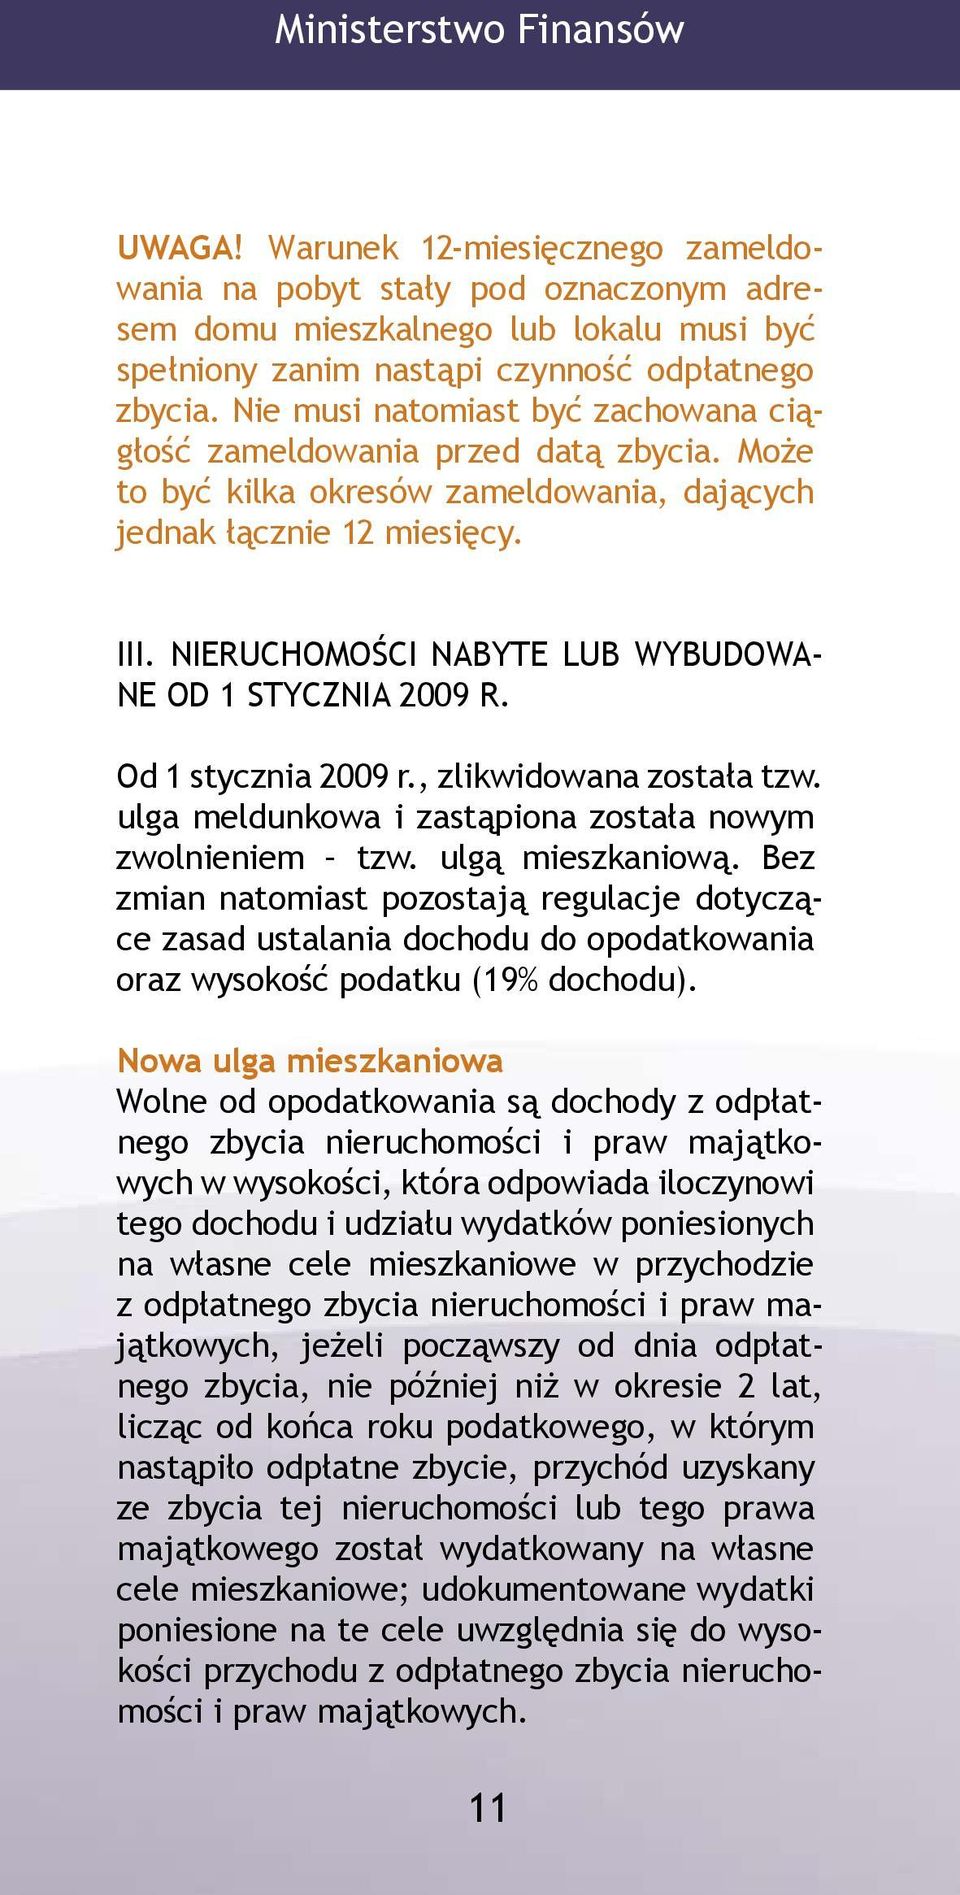 NIERUCHOMOŚCI NABYTE LUB WYBUDOWA- NE OD 1 STYCZNIA 2009 R. Od 1 stycznia 2009 r., zlikwidowana została tzw. ulga meldunkowa i zastąpiona została nowym zwolnieniem tzw. ulgą mieszkaniową.